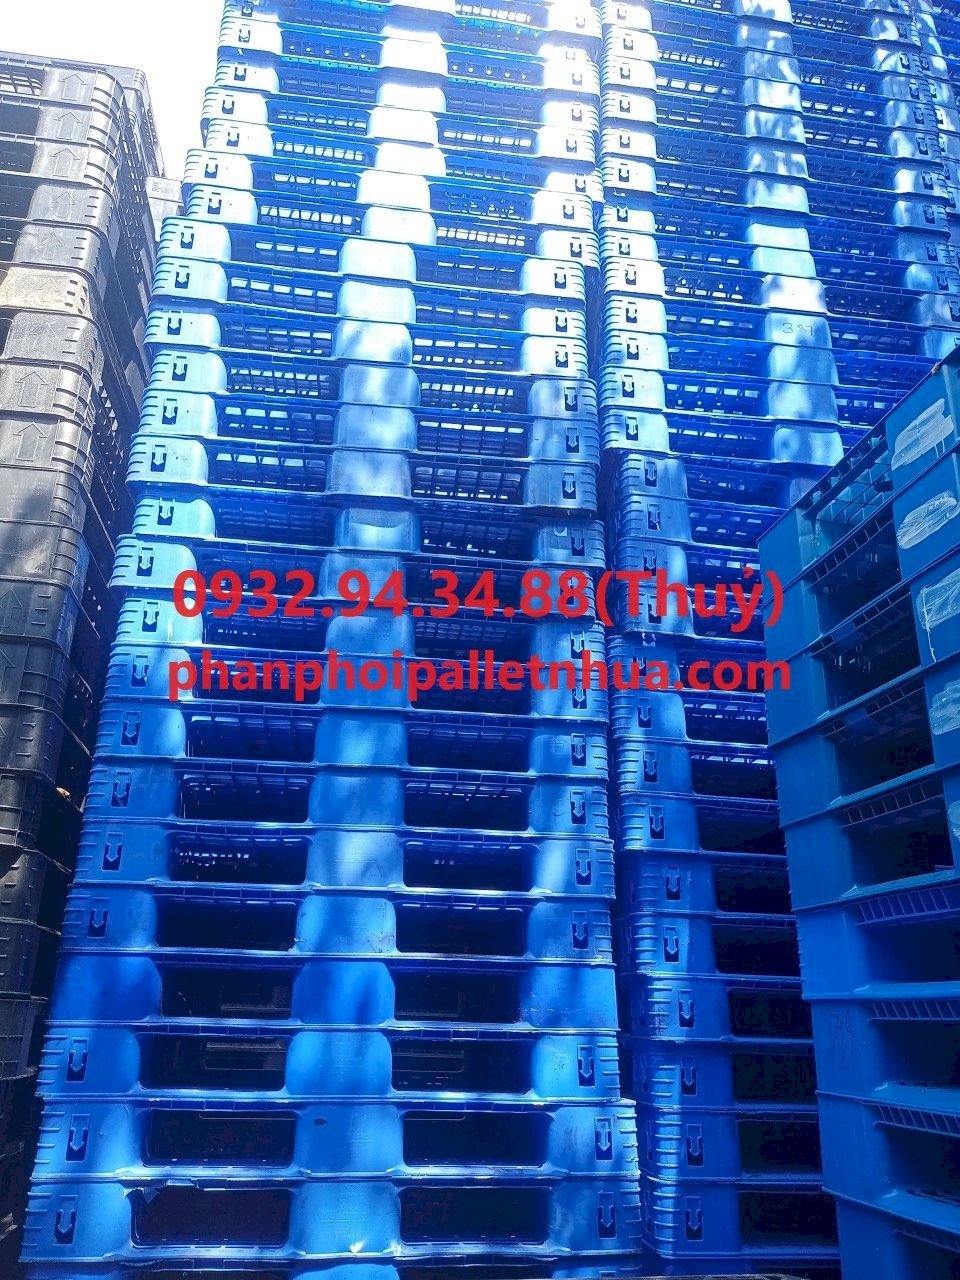 Phân phối pallet nhựa tại Bình Phước, liên hệ 0932943488